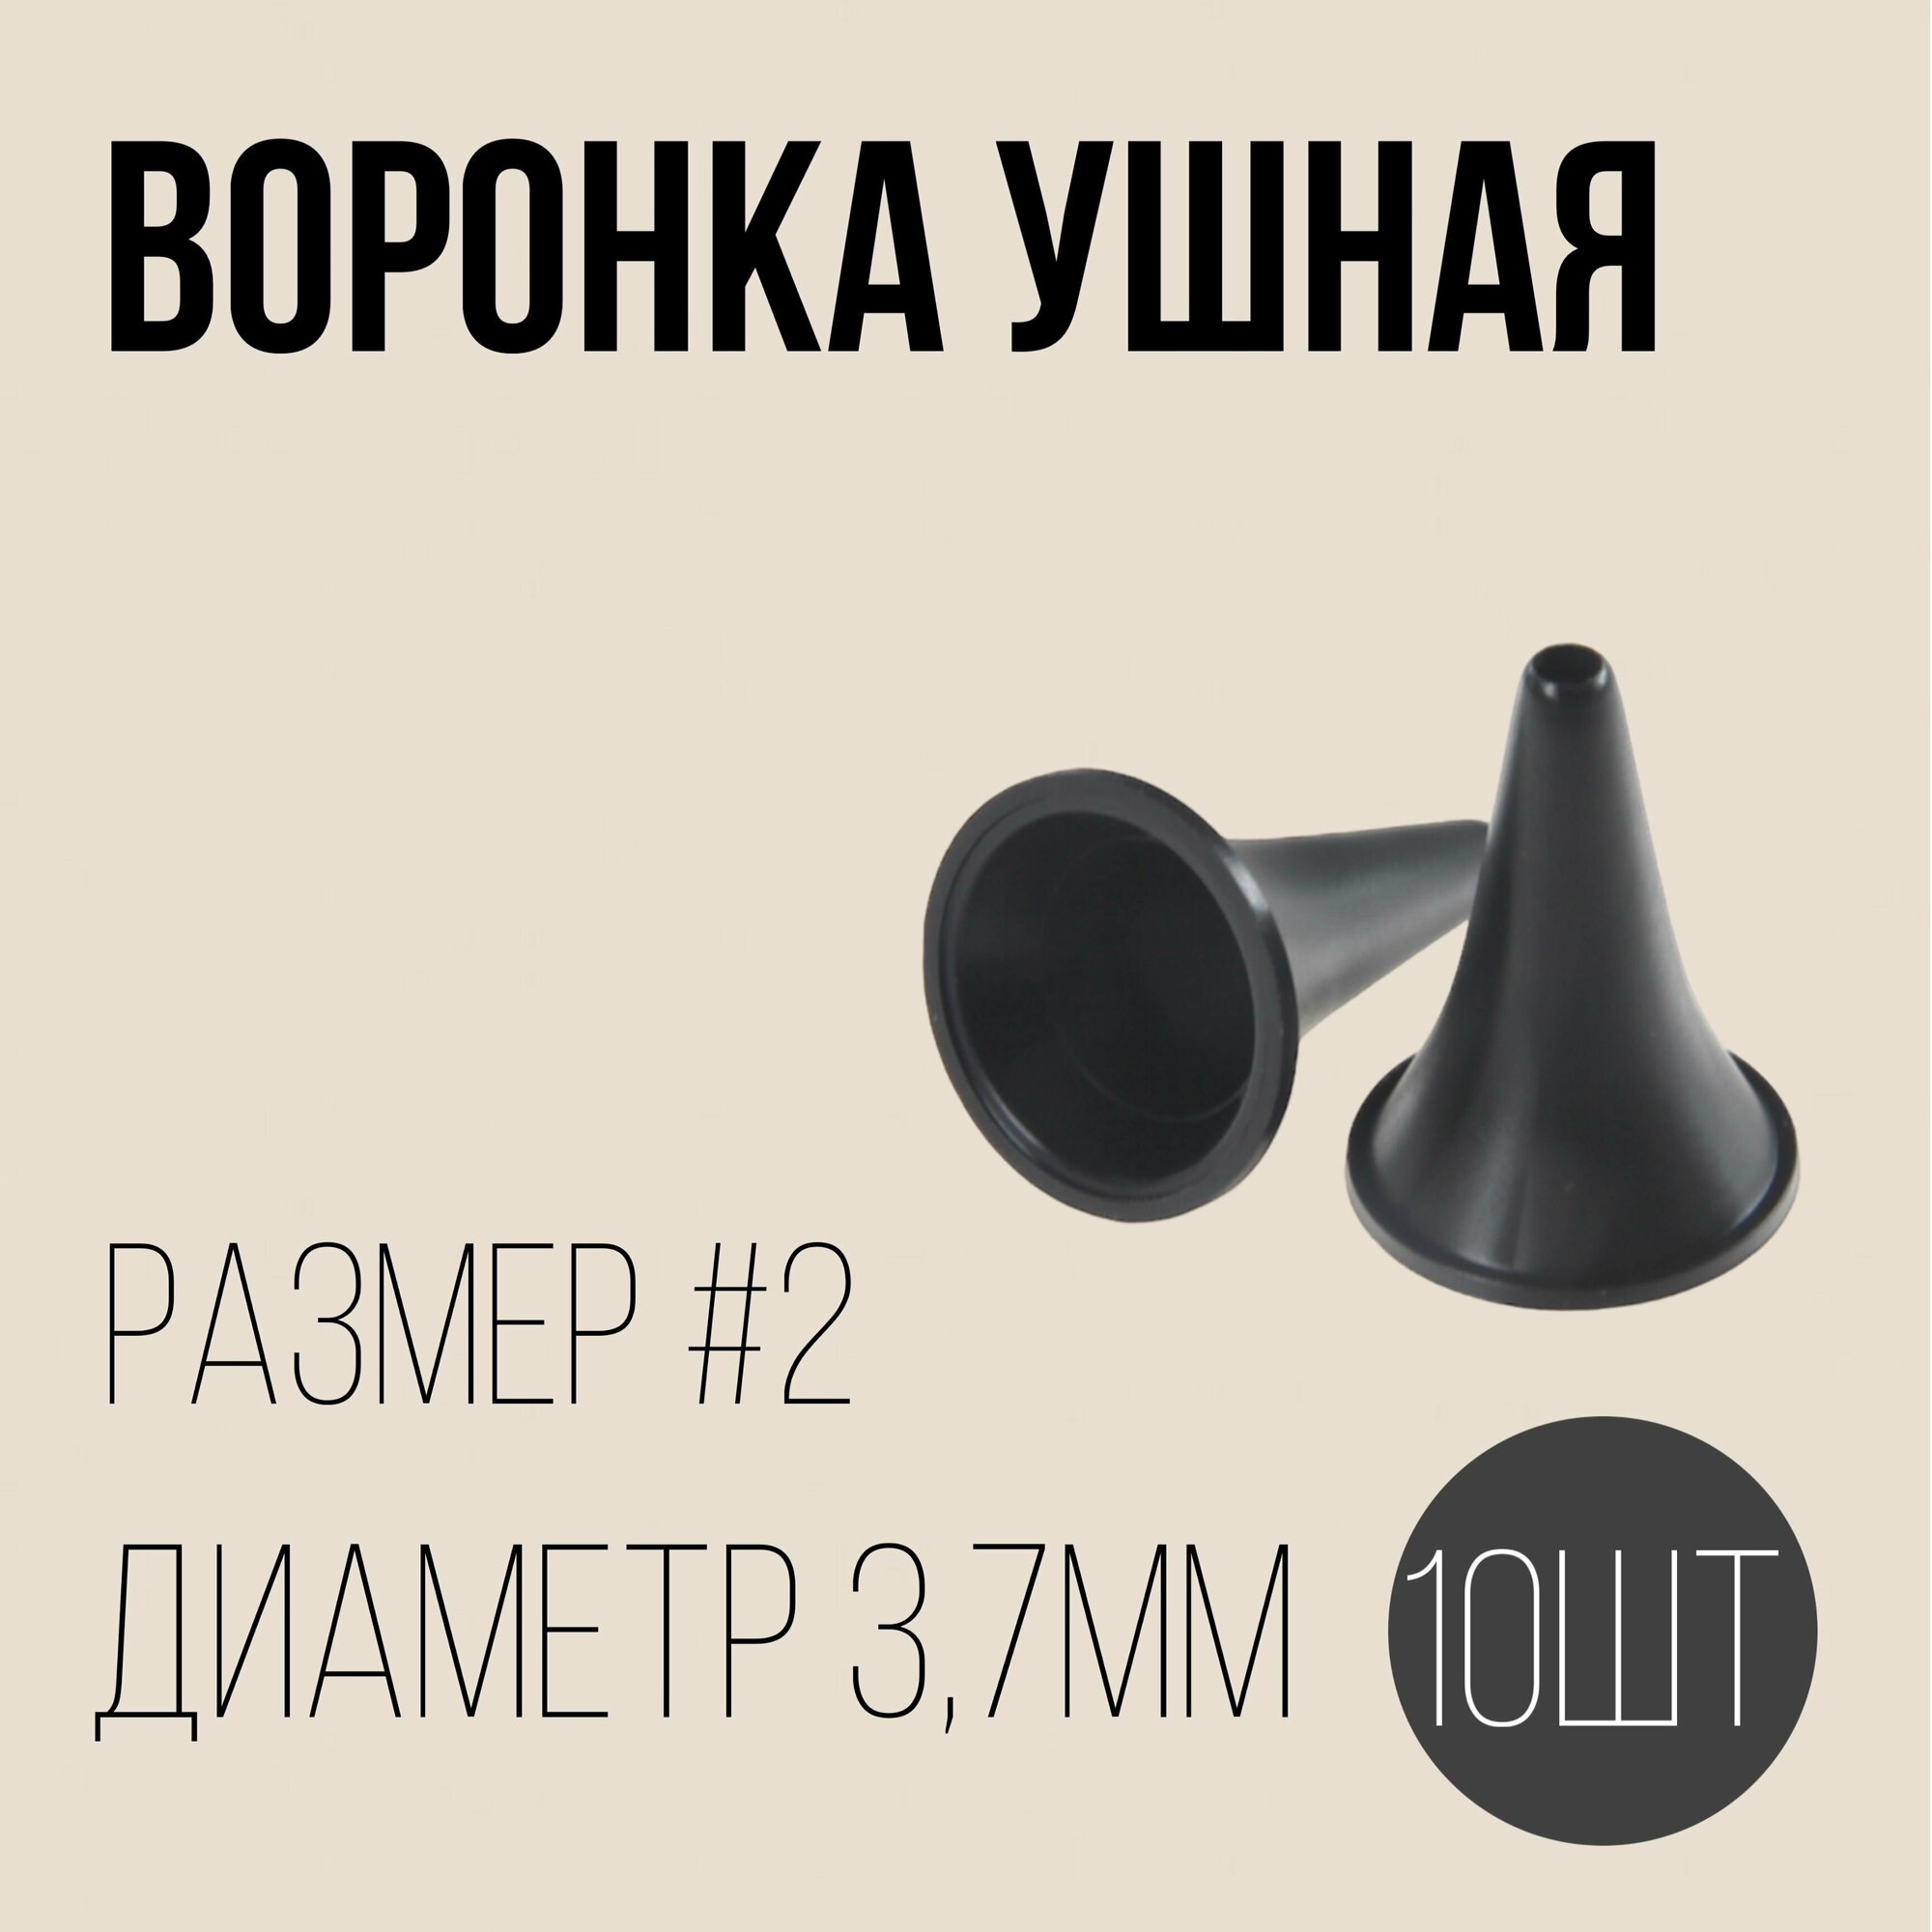 Воронка ушная №3 комплект - 10шт полимерные изделия